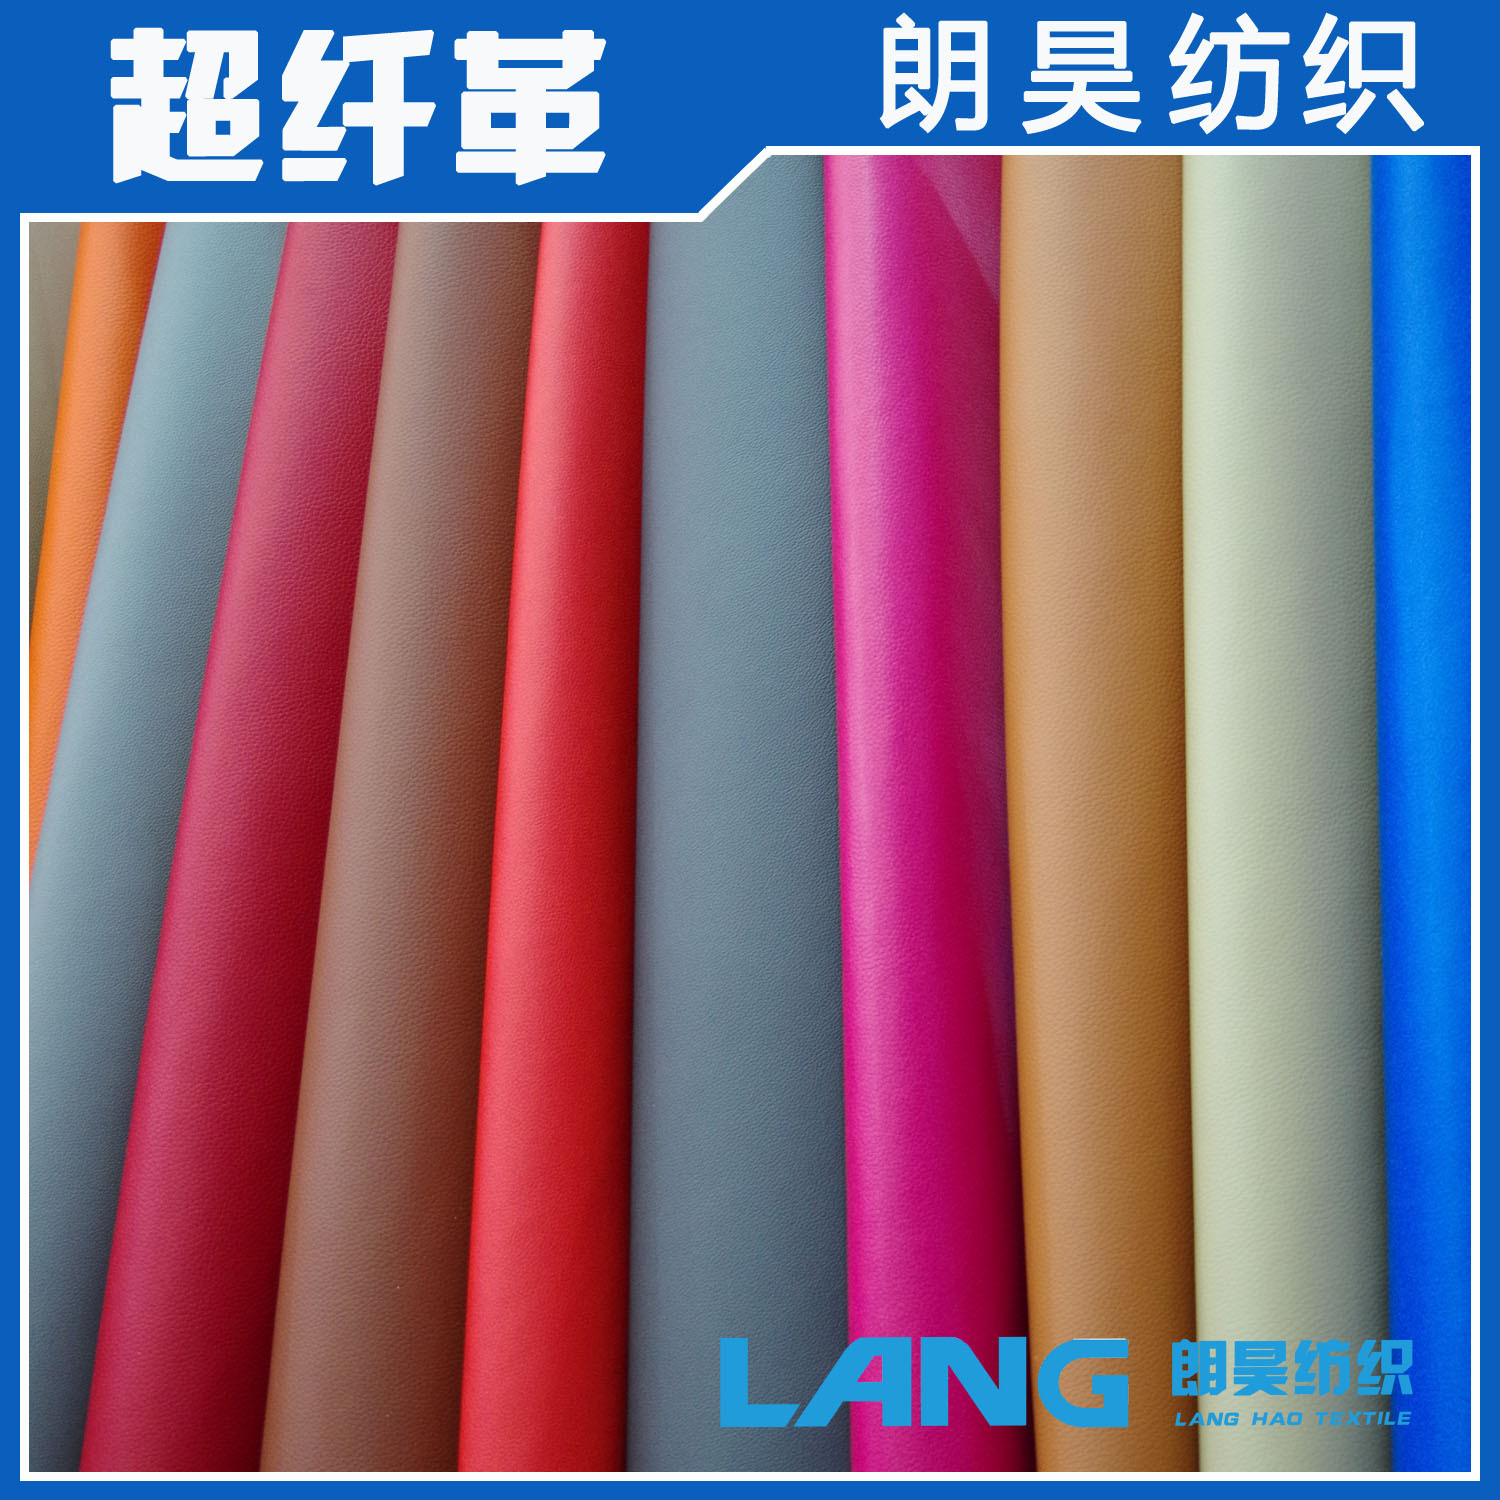 朗昊纺织供应超纤 超纤皮料 真超纤仿真皮 专业超纤厂家